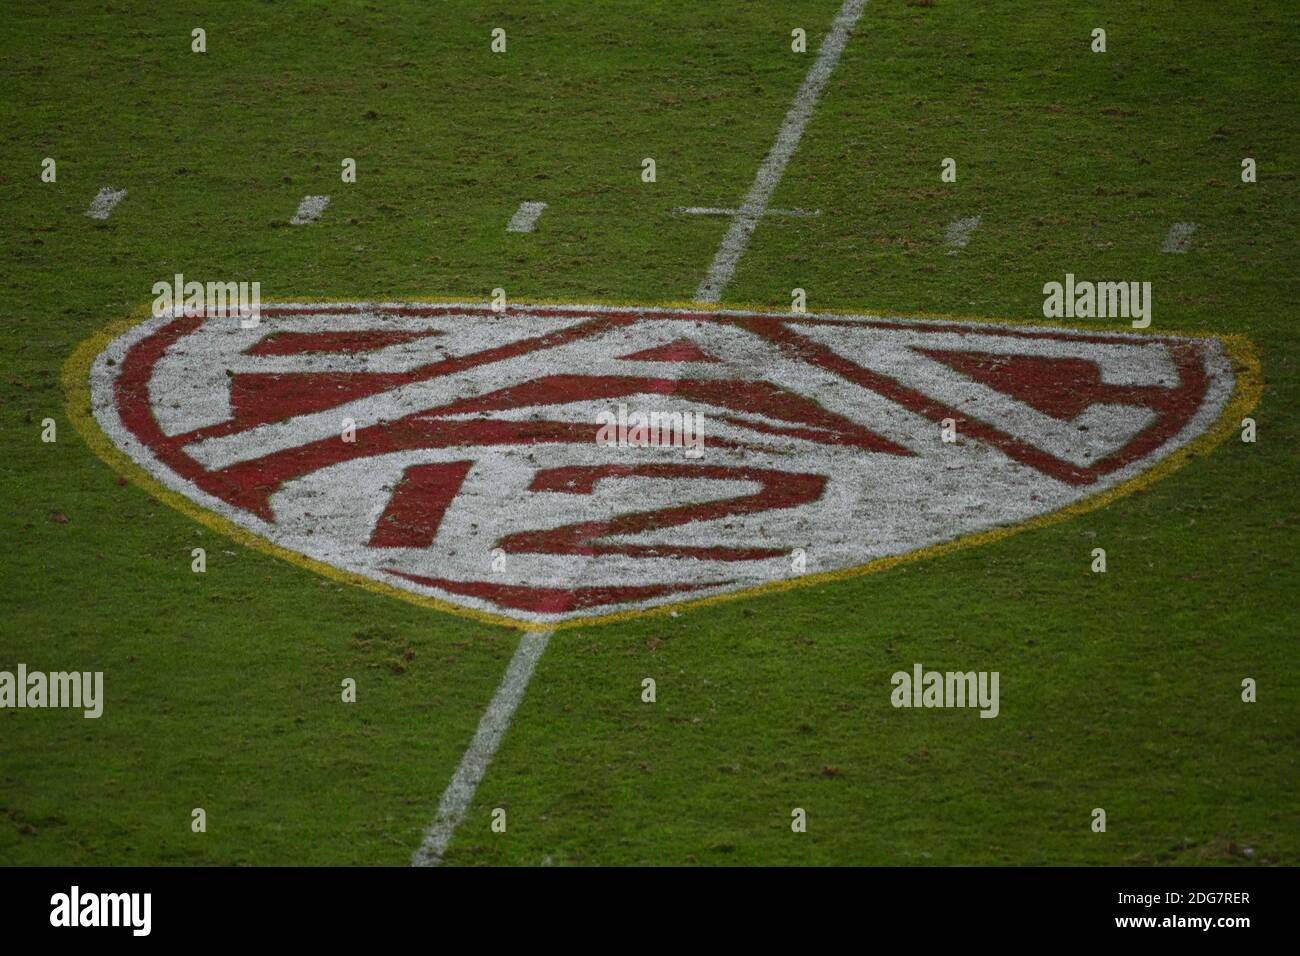 Vue détaillée du logo "PAC-12" sur le terrain lors d'un match de football NCAA entre les chevaux de Troie de la Californie du Sud et les Cougars de l'État de Washington, Banque D'Images